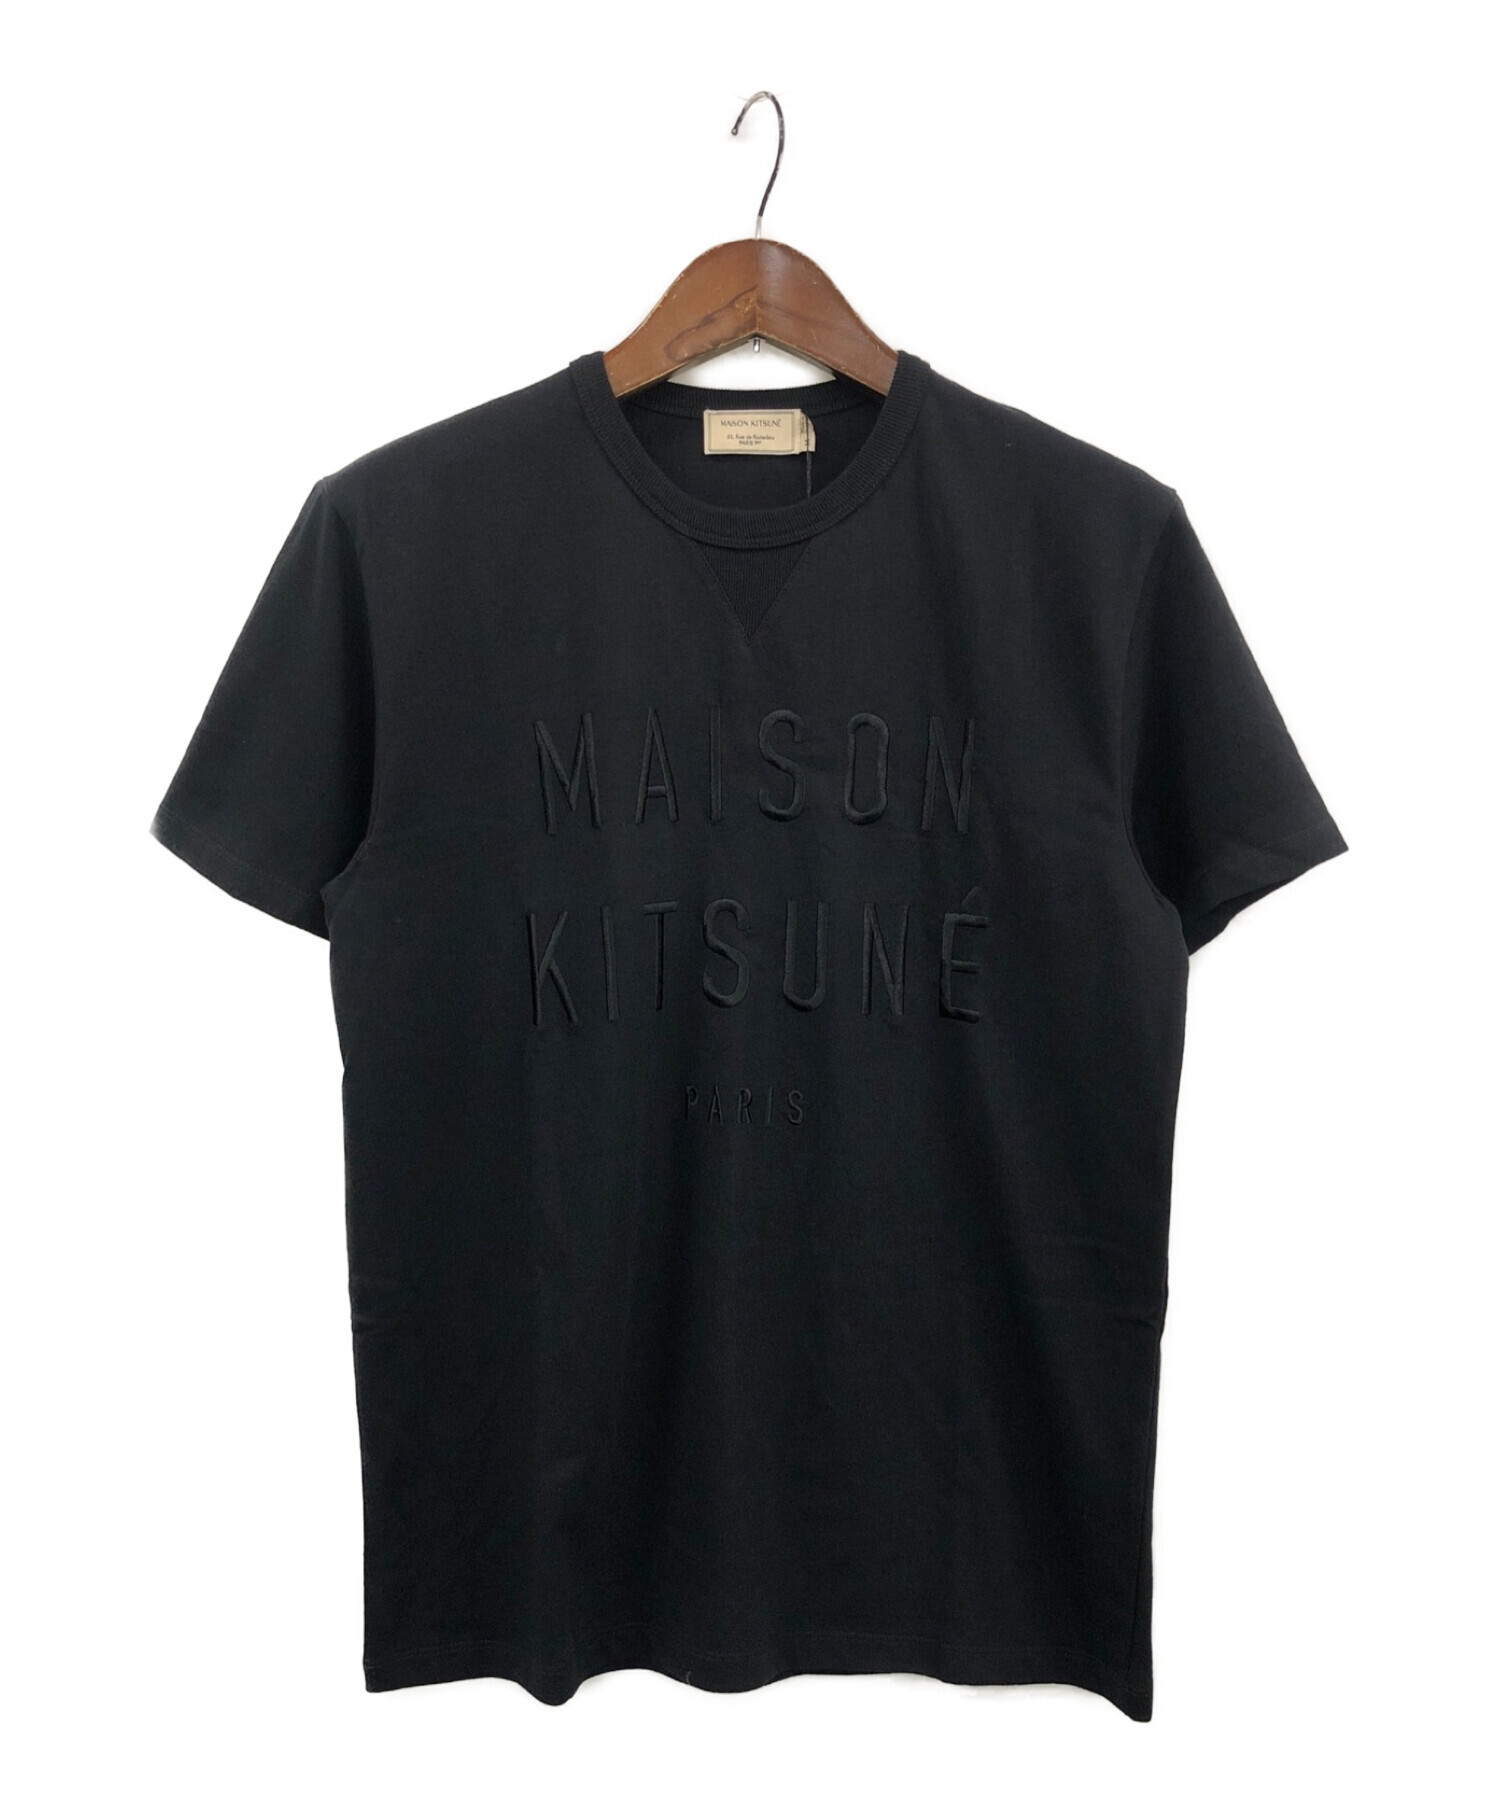 【デッドストック】メゾンキツネ MAISONKITSUNE Tシャツ 黒 M